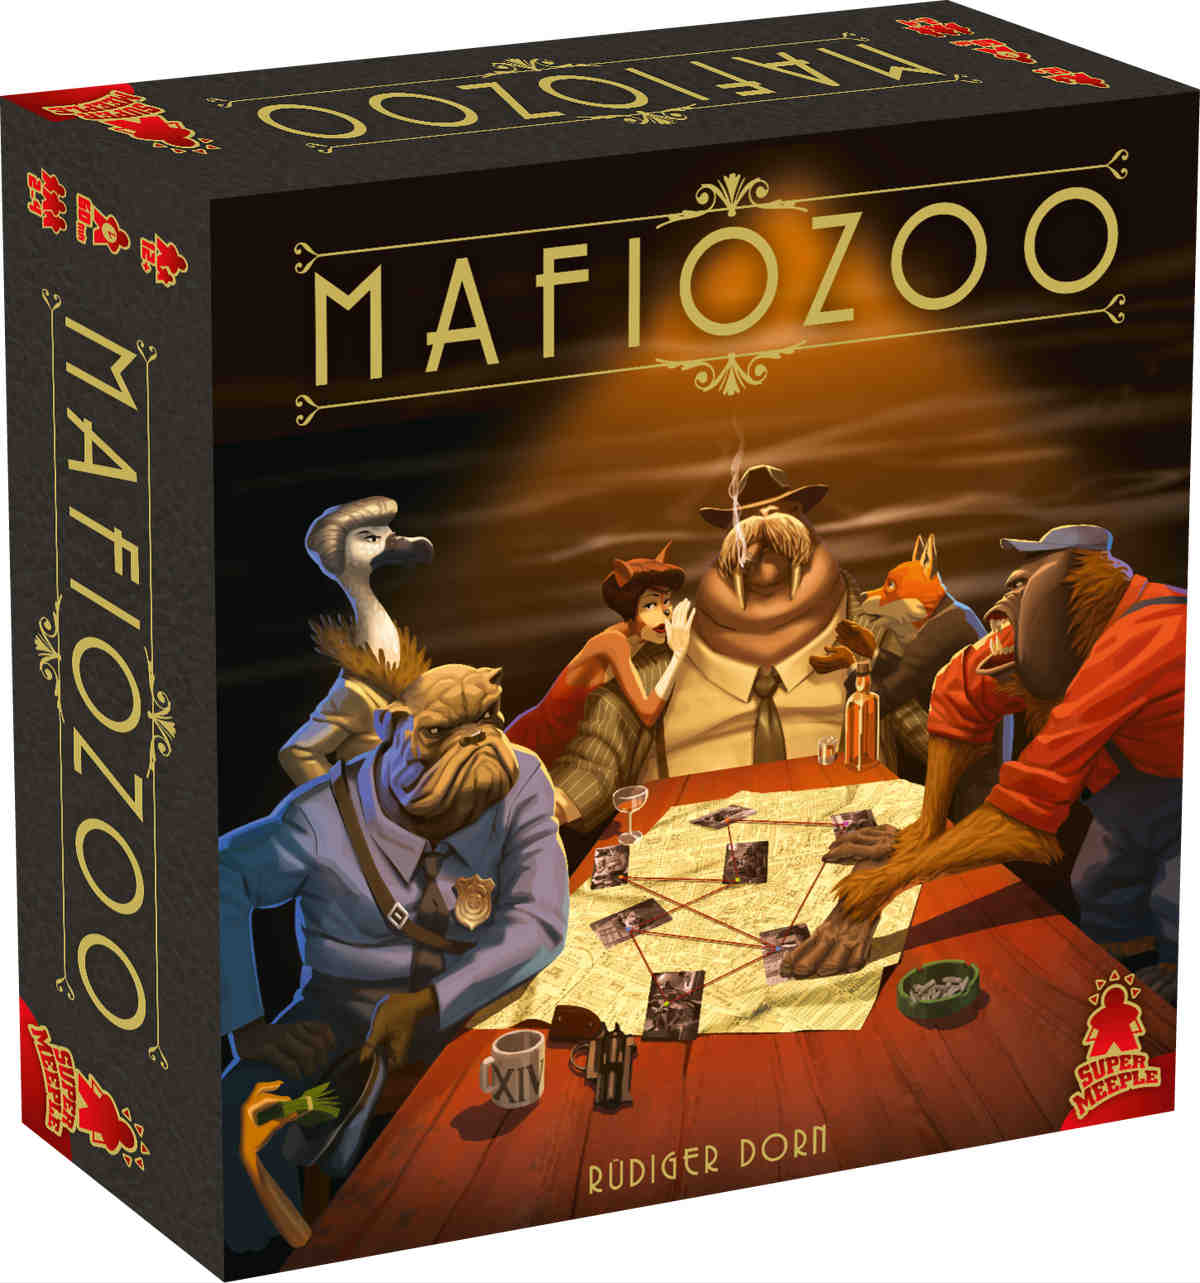 Boîte du jeu Mafiozoo